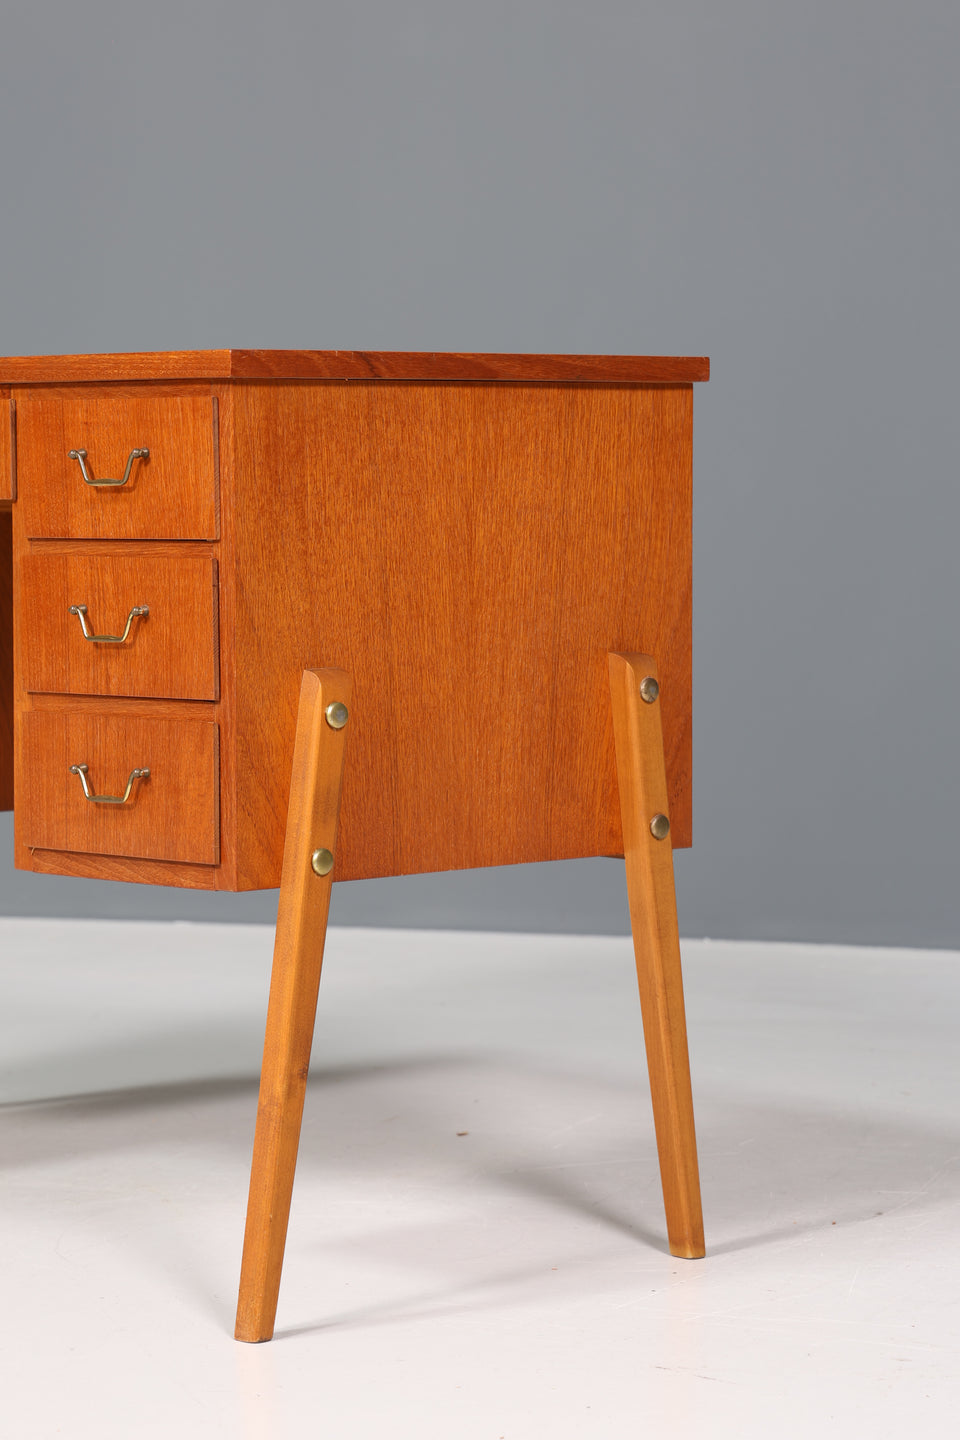 Schlichter Mid Century Schreibtisch Teak Holz "Made in Denmark" Tisch Bürotisch Office Desk 60er Jahre Table